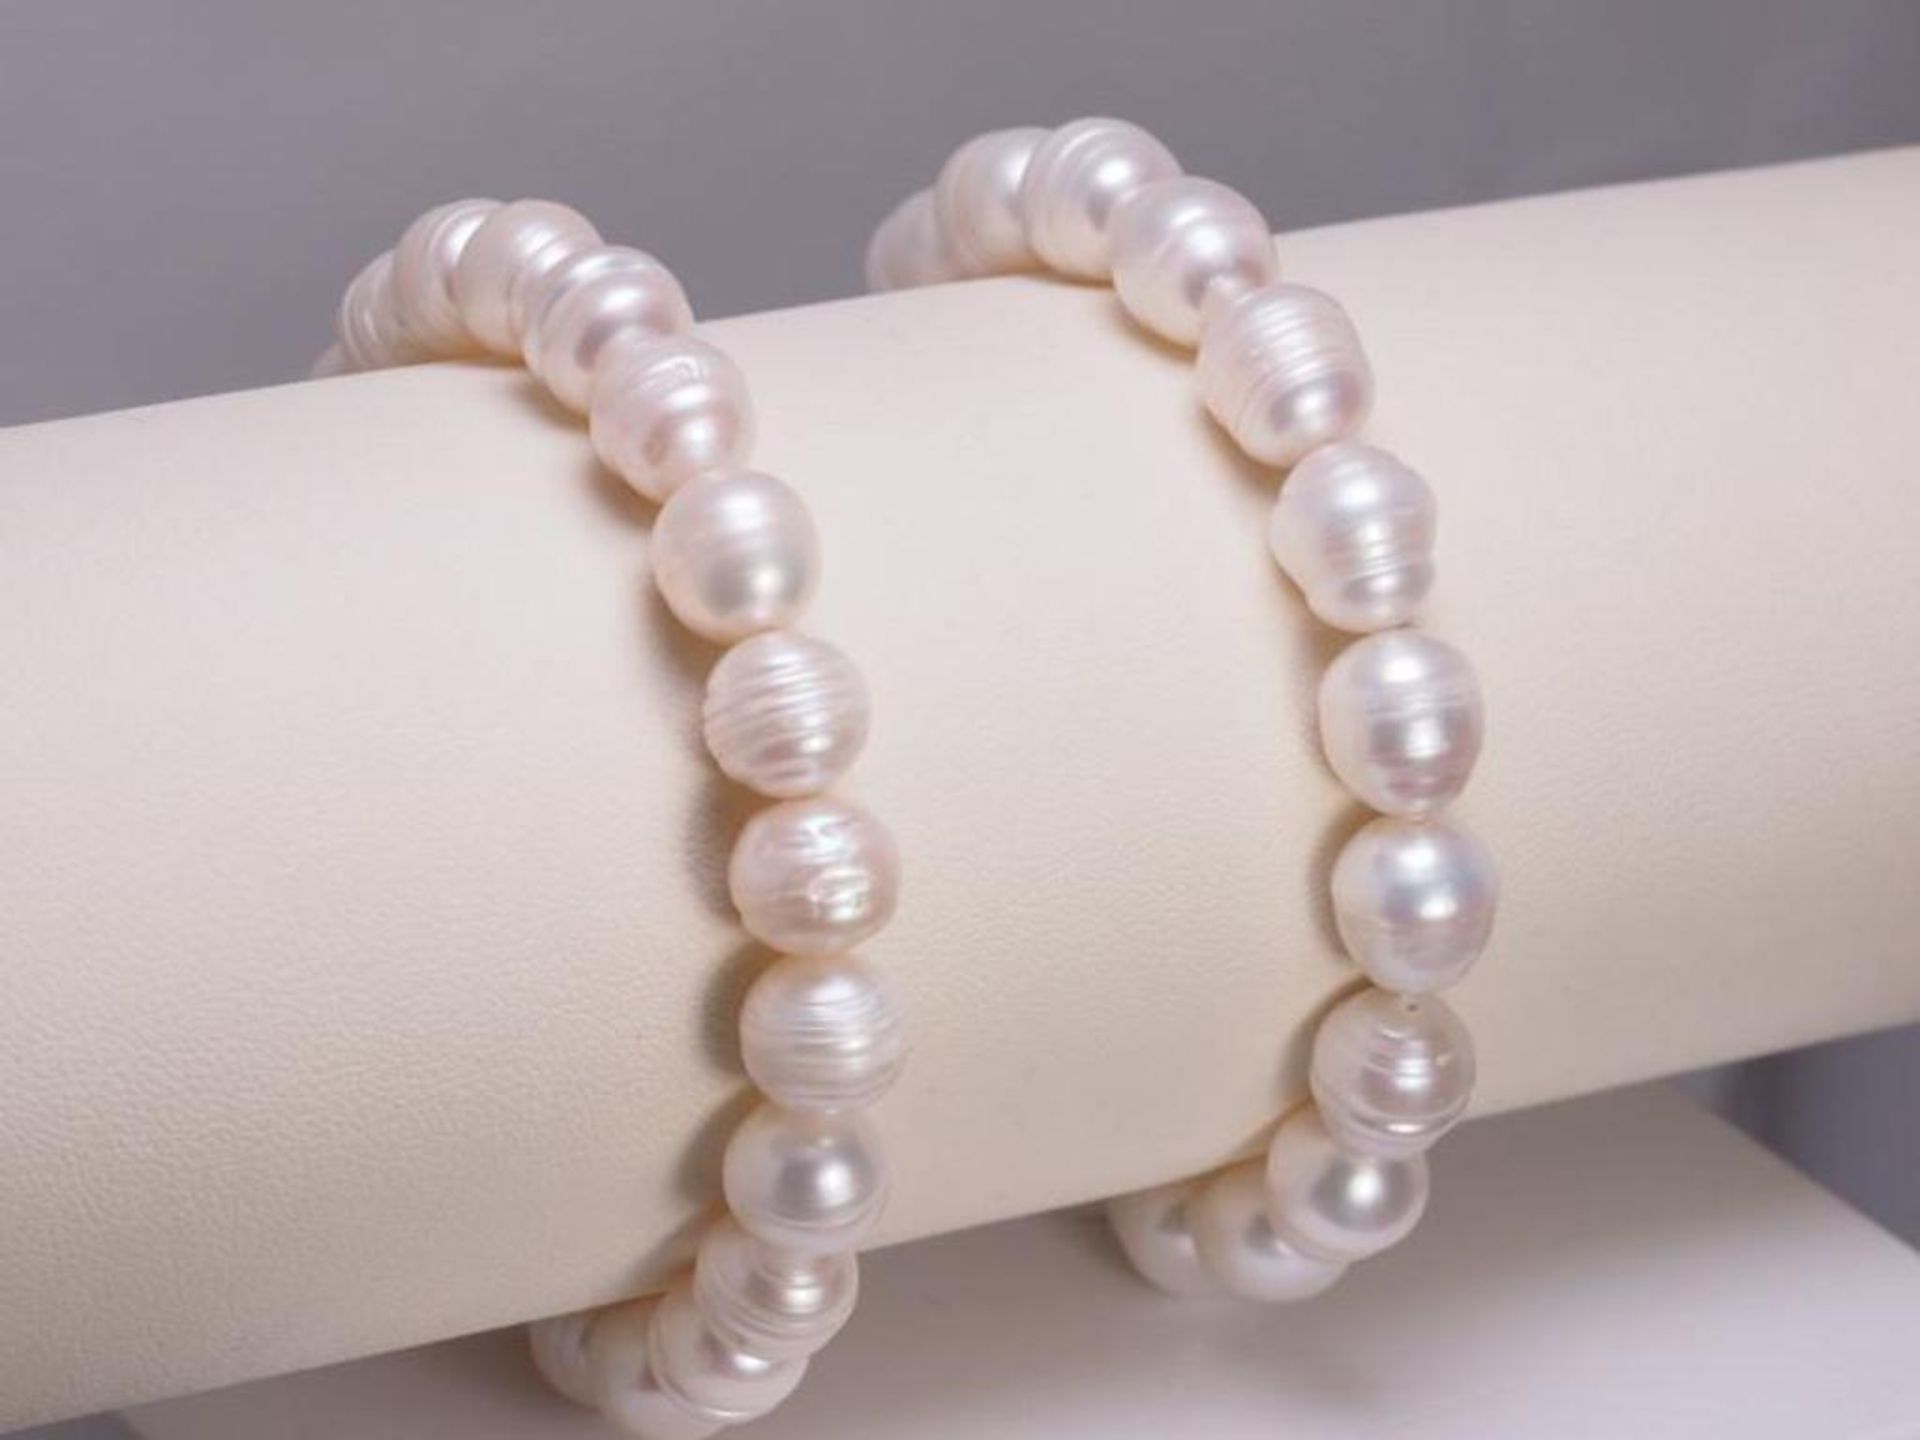 2 Fresh Water Pearl Bracelets Flexible Bracelets Retail $150 - Image 3 of 3